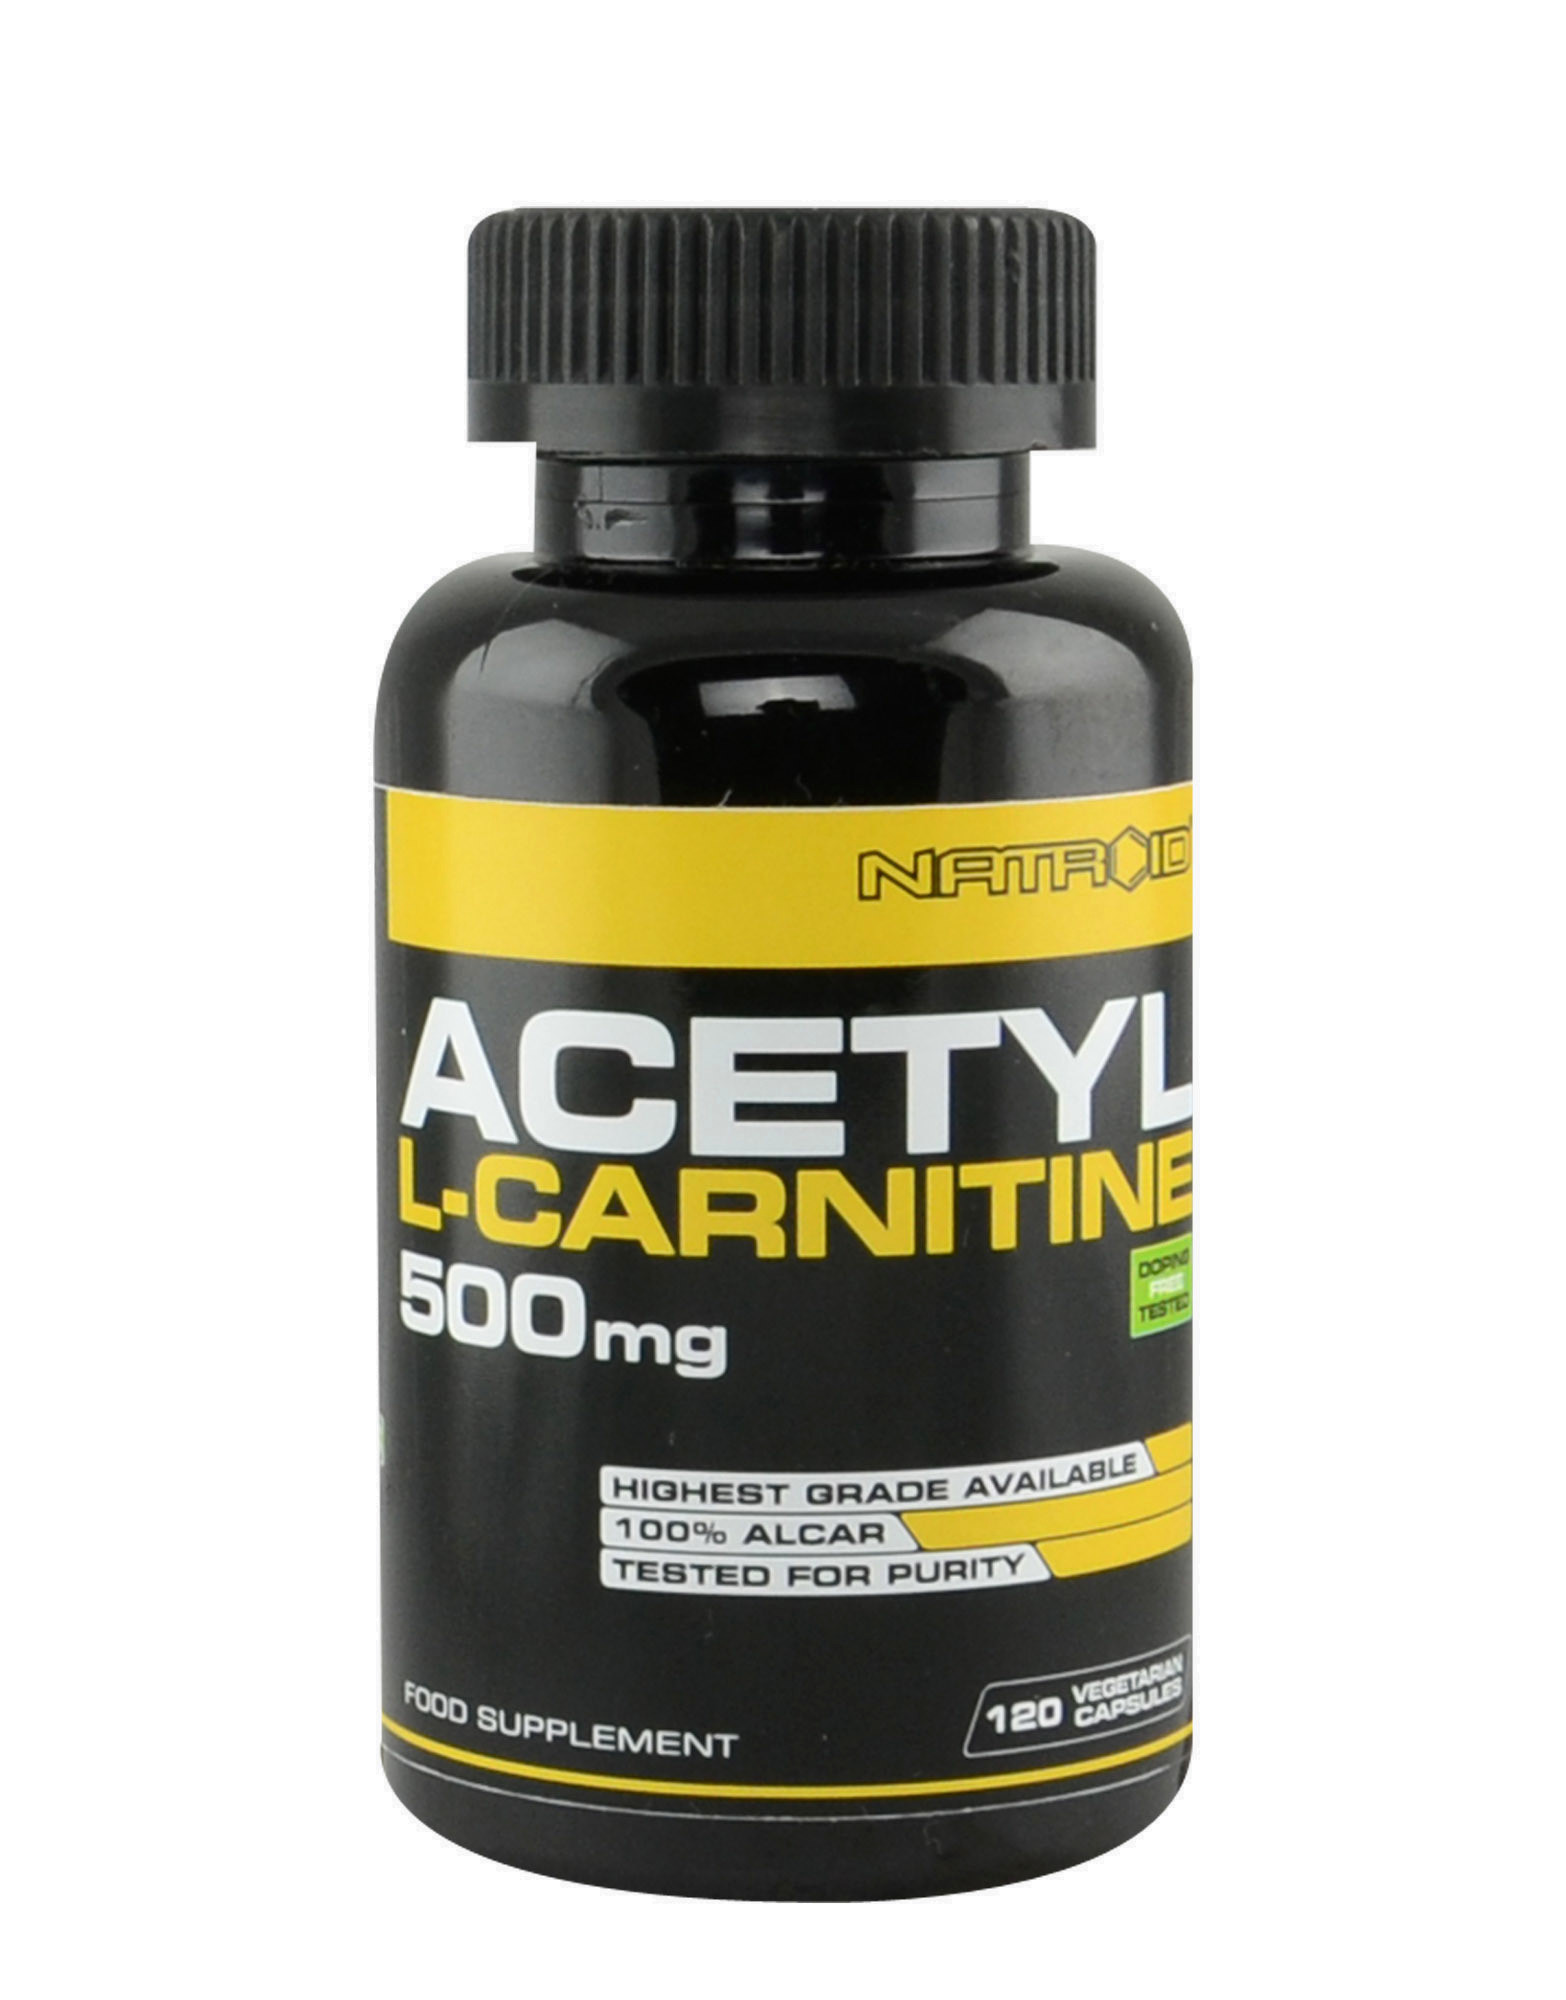 Л карнитин. Ацетил карнитин. L-Carnitine 500mg. Ацетил л карнитин.